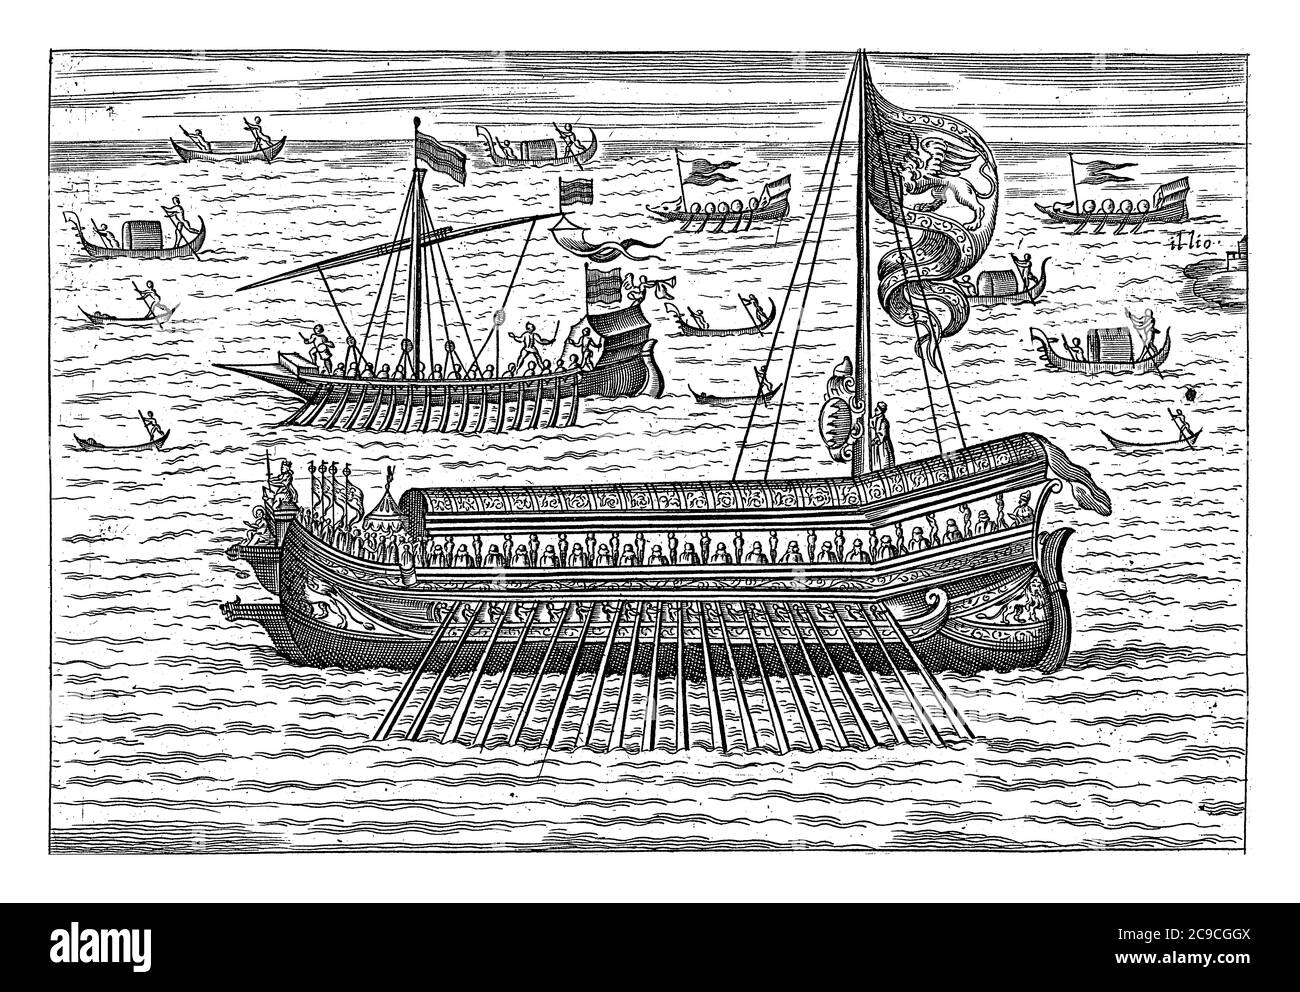 Bucintoro et autres navires à Venise, anonyme, 1610 plusieurs navires sur l'eau, y compris le Bucintoro, la galère des doges, gravure ancienne. Banque D'Images